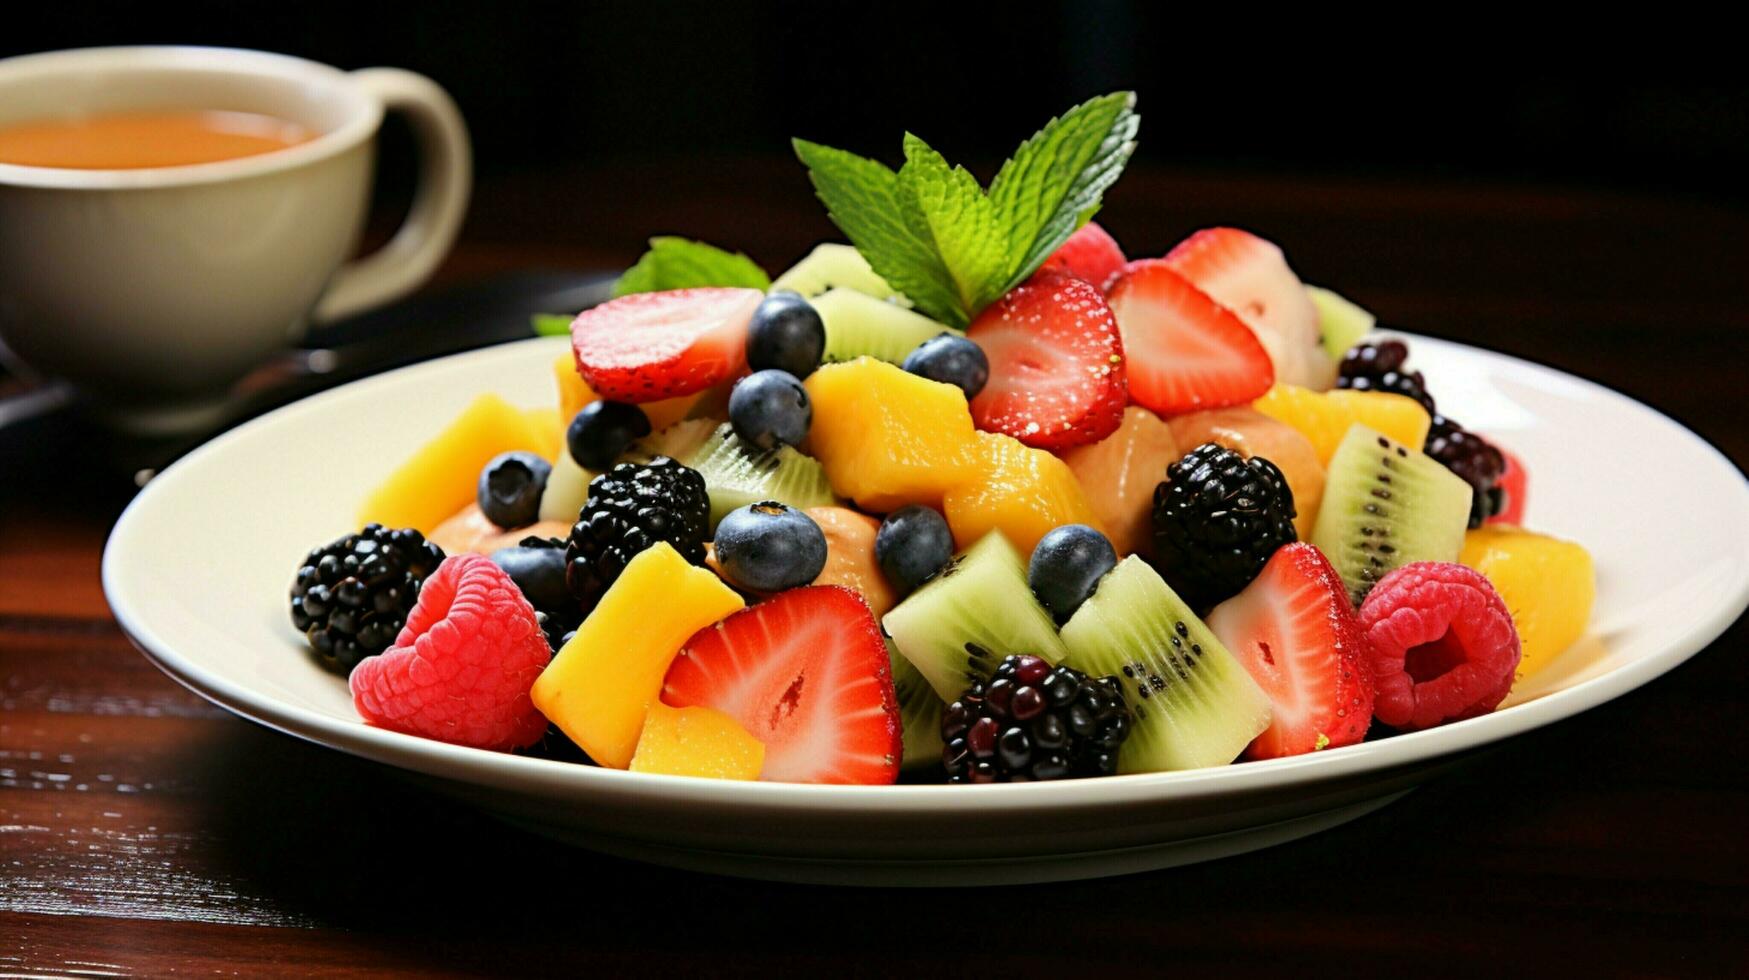 Frais fruit salade une en bonne santé gourmet délice photo